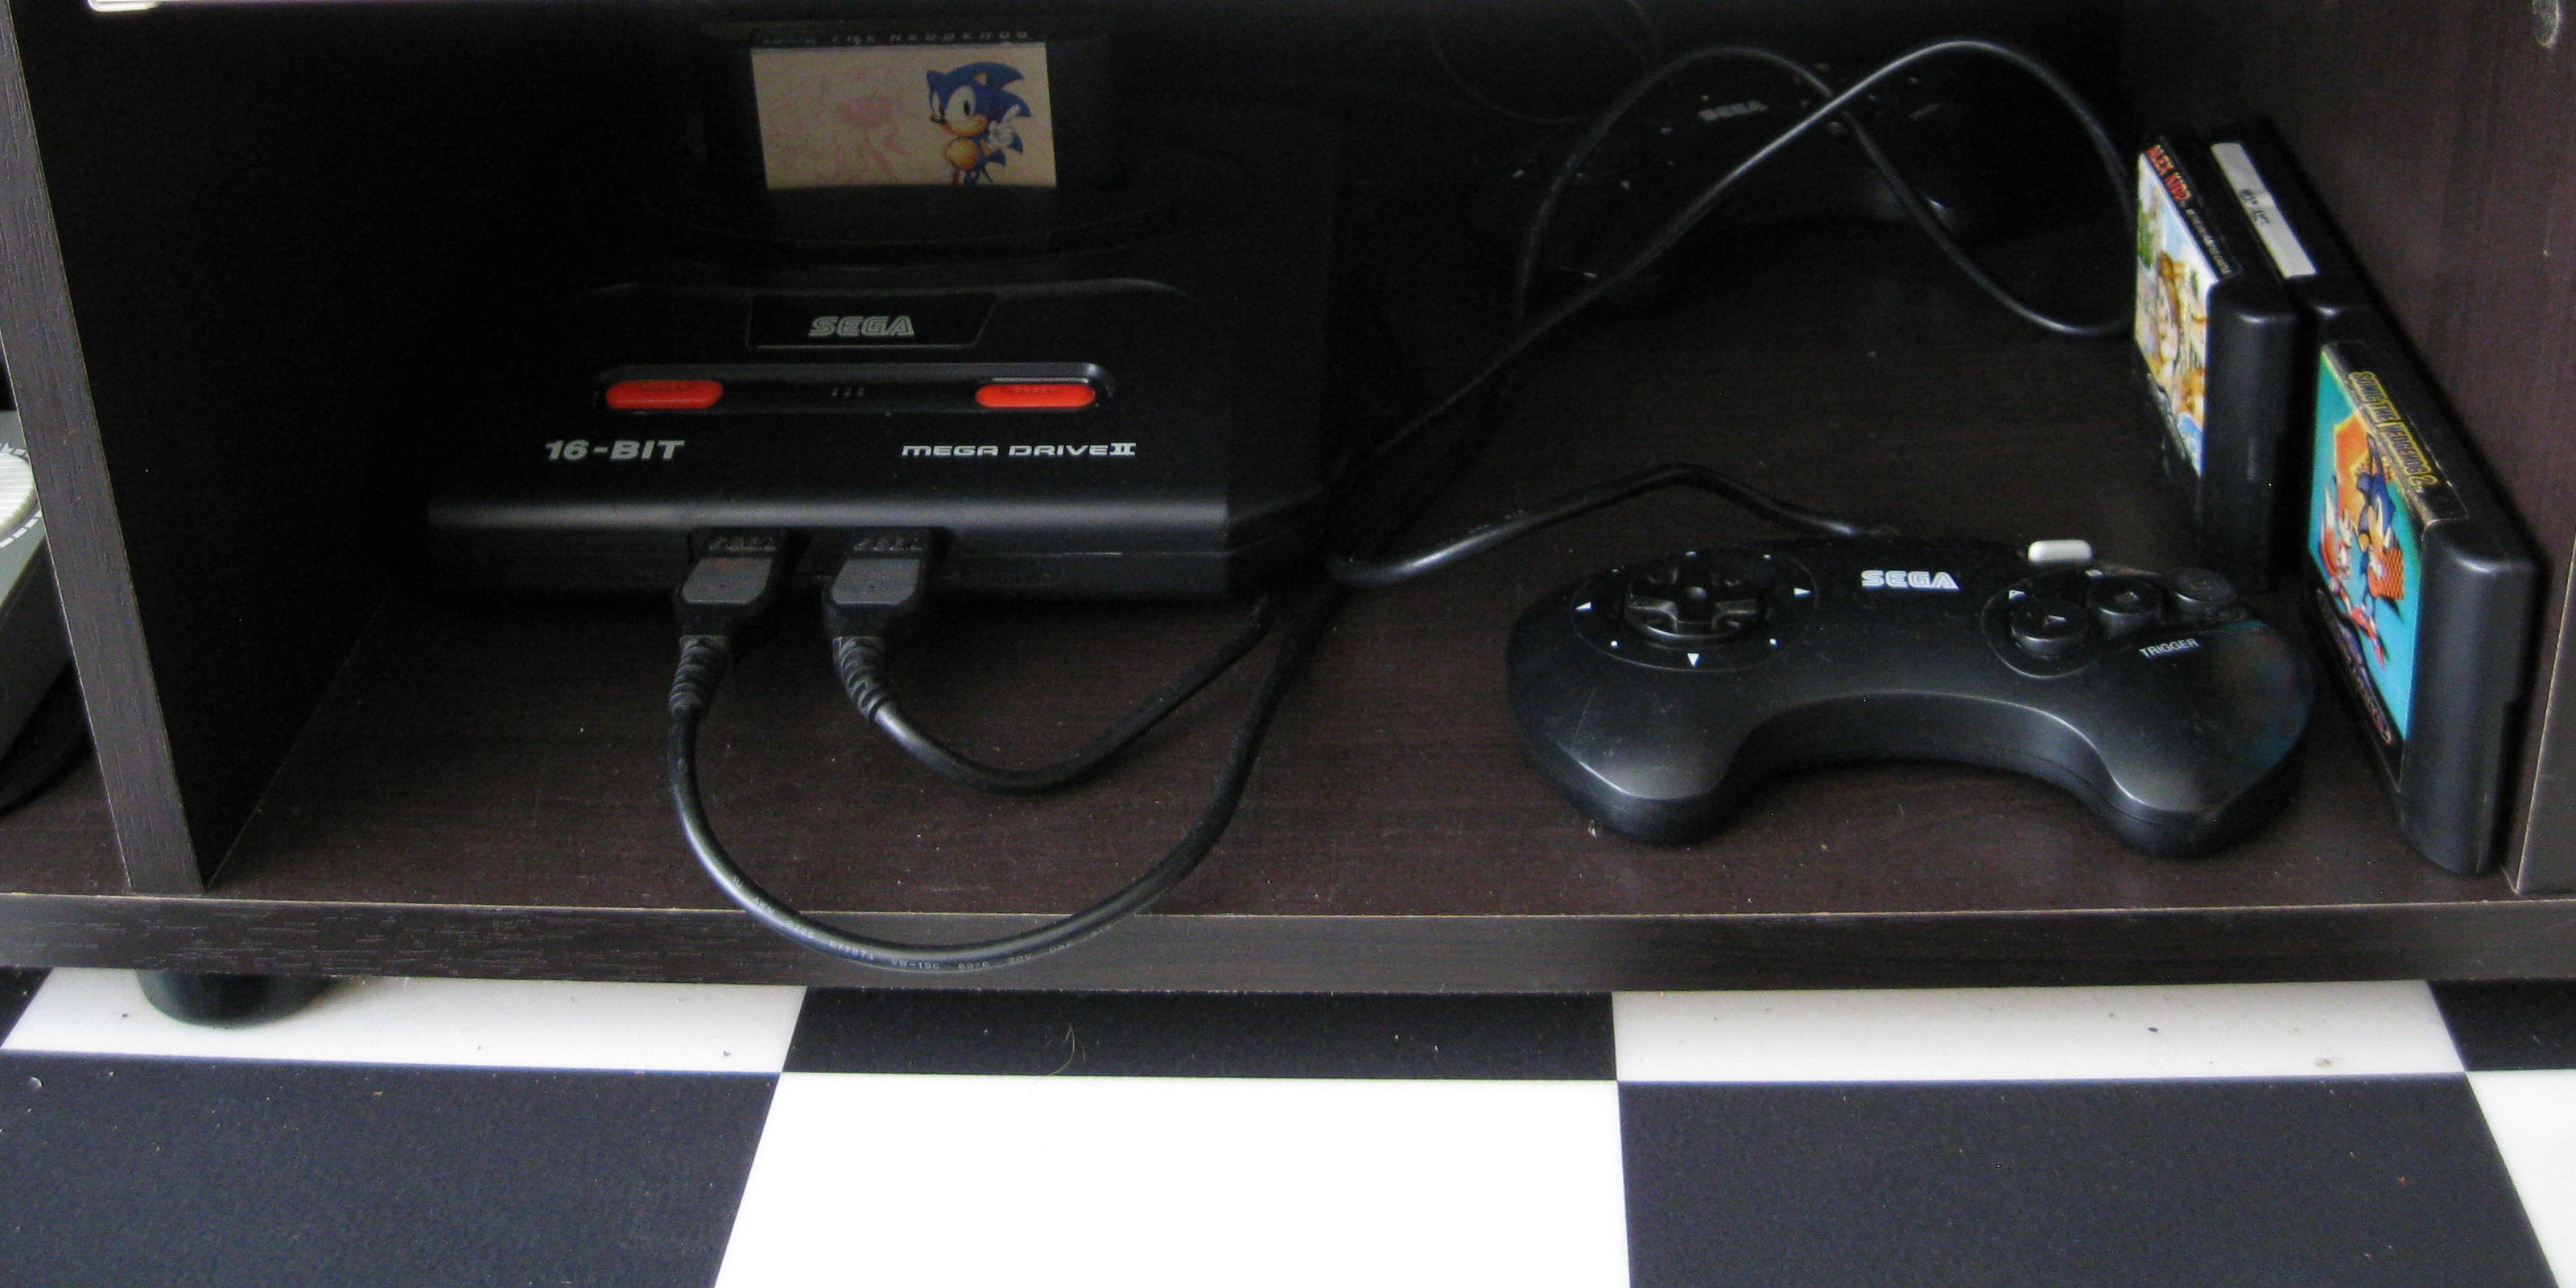 Sega Mega Drive (Genesis) II, 16-BIT